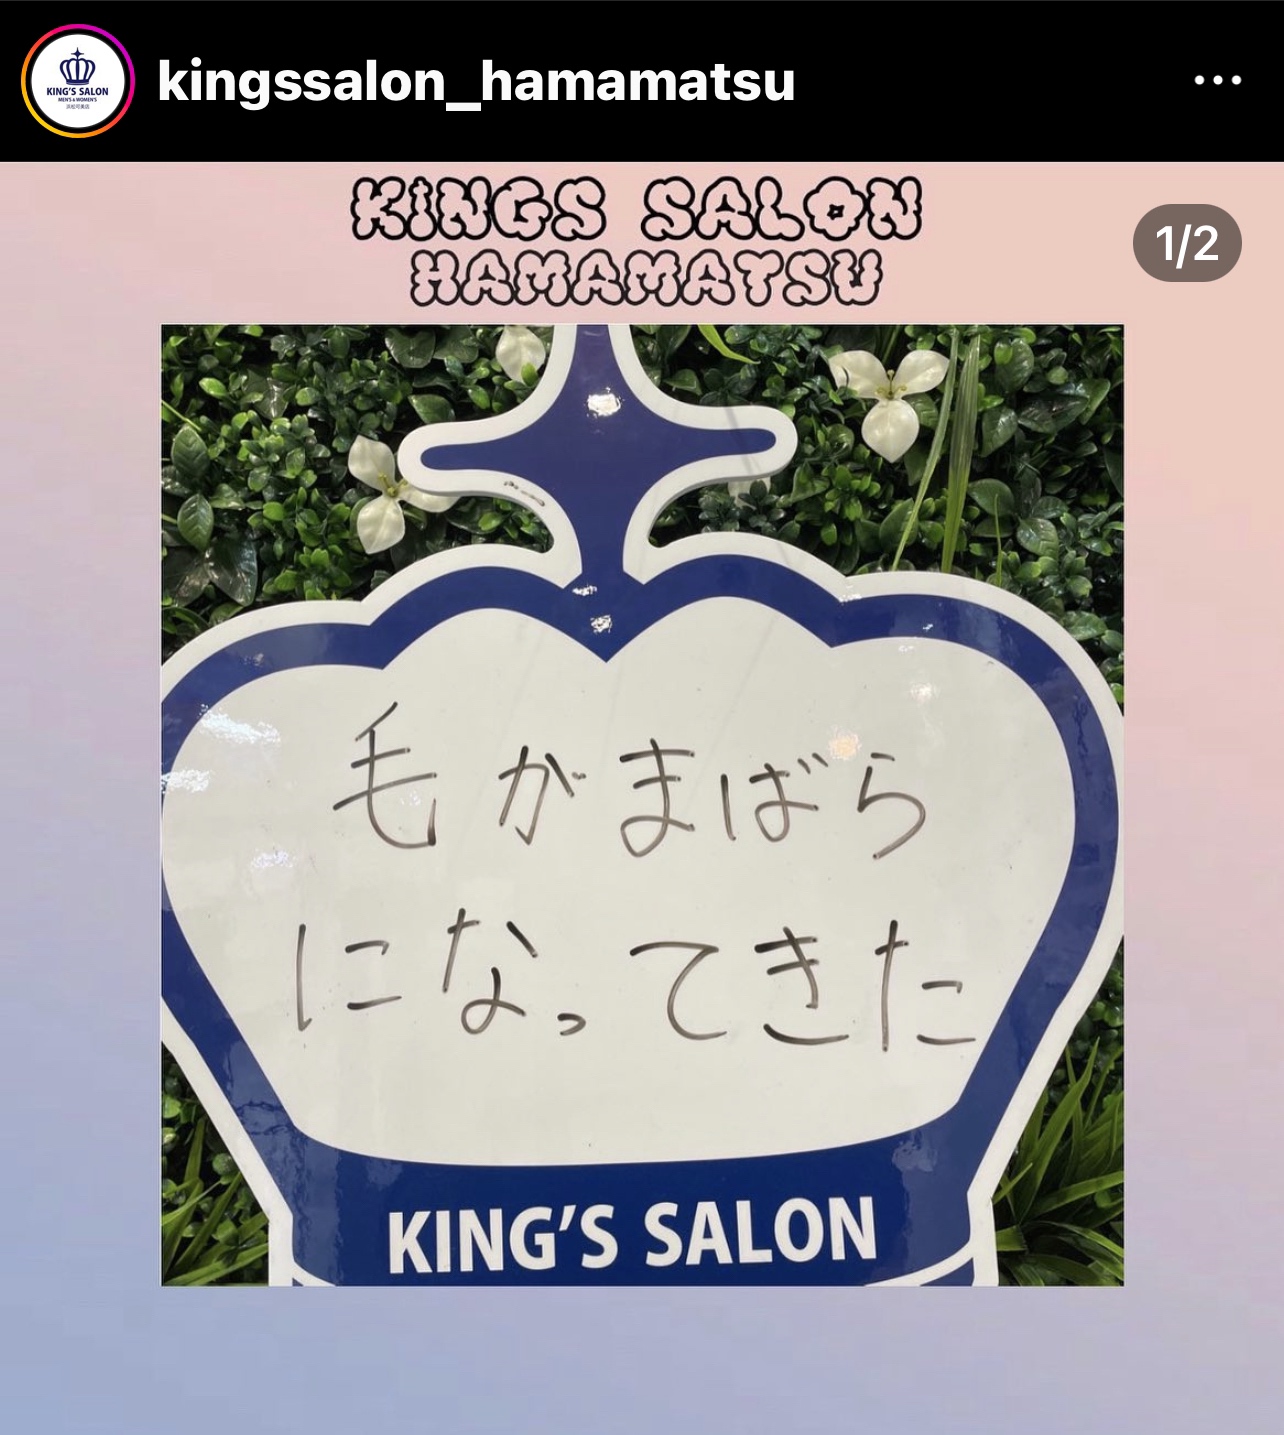 キングスサロンMEGAドン・キホーテ浜松可美店 お客様の声 サムネイル画像